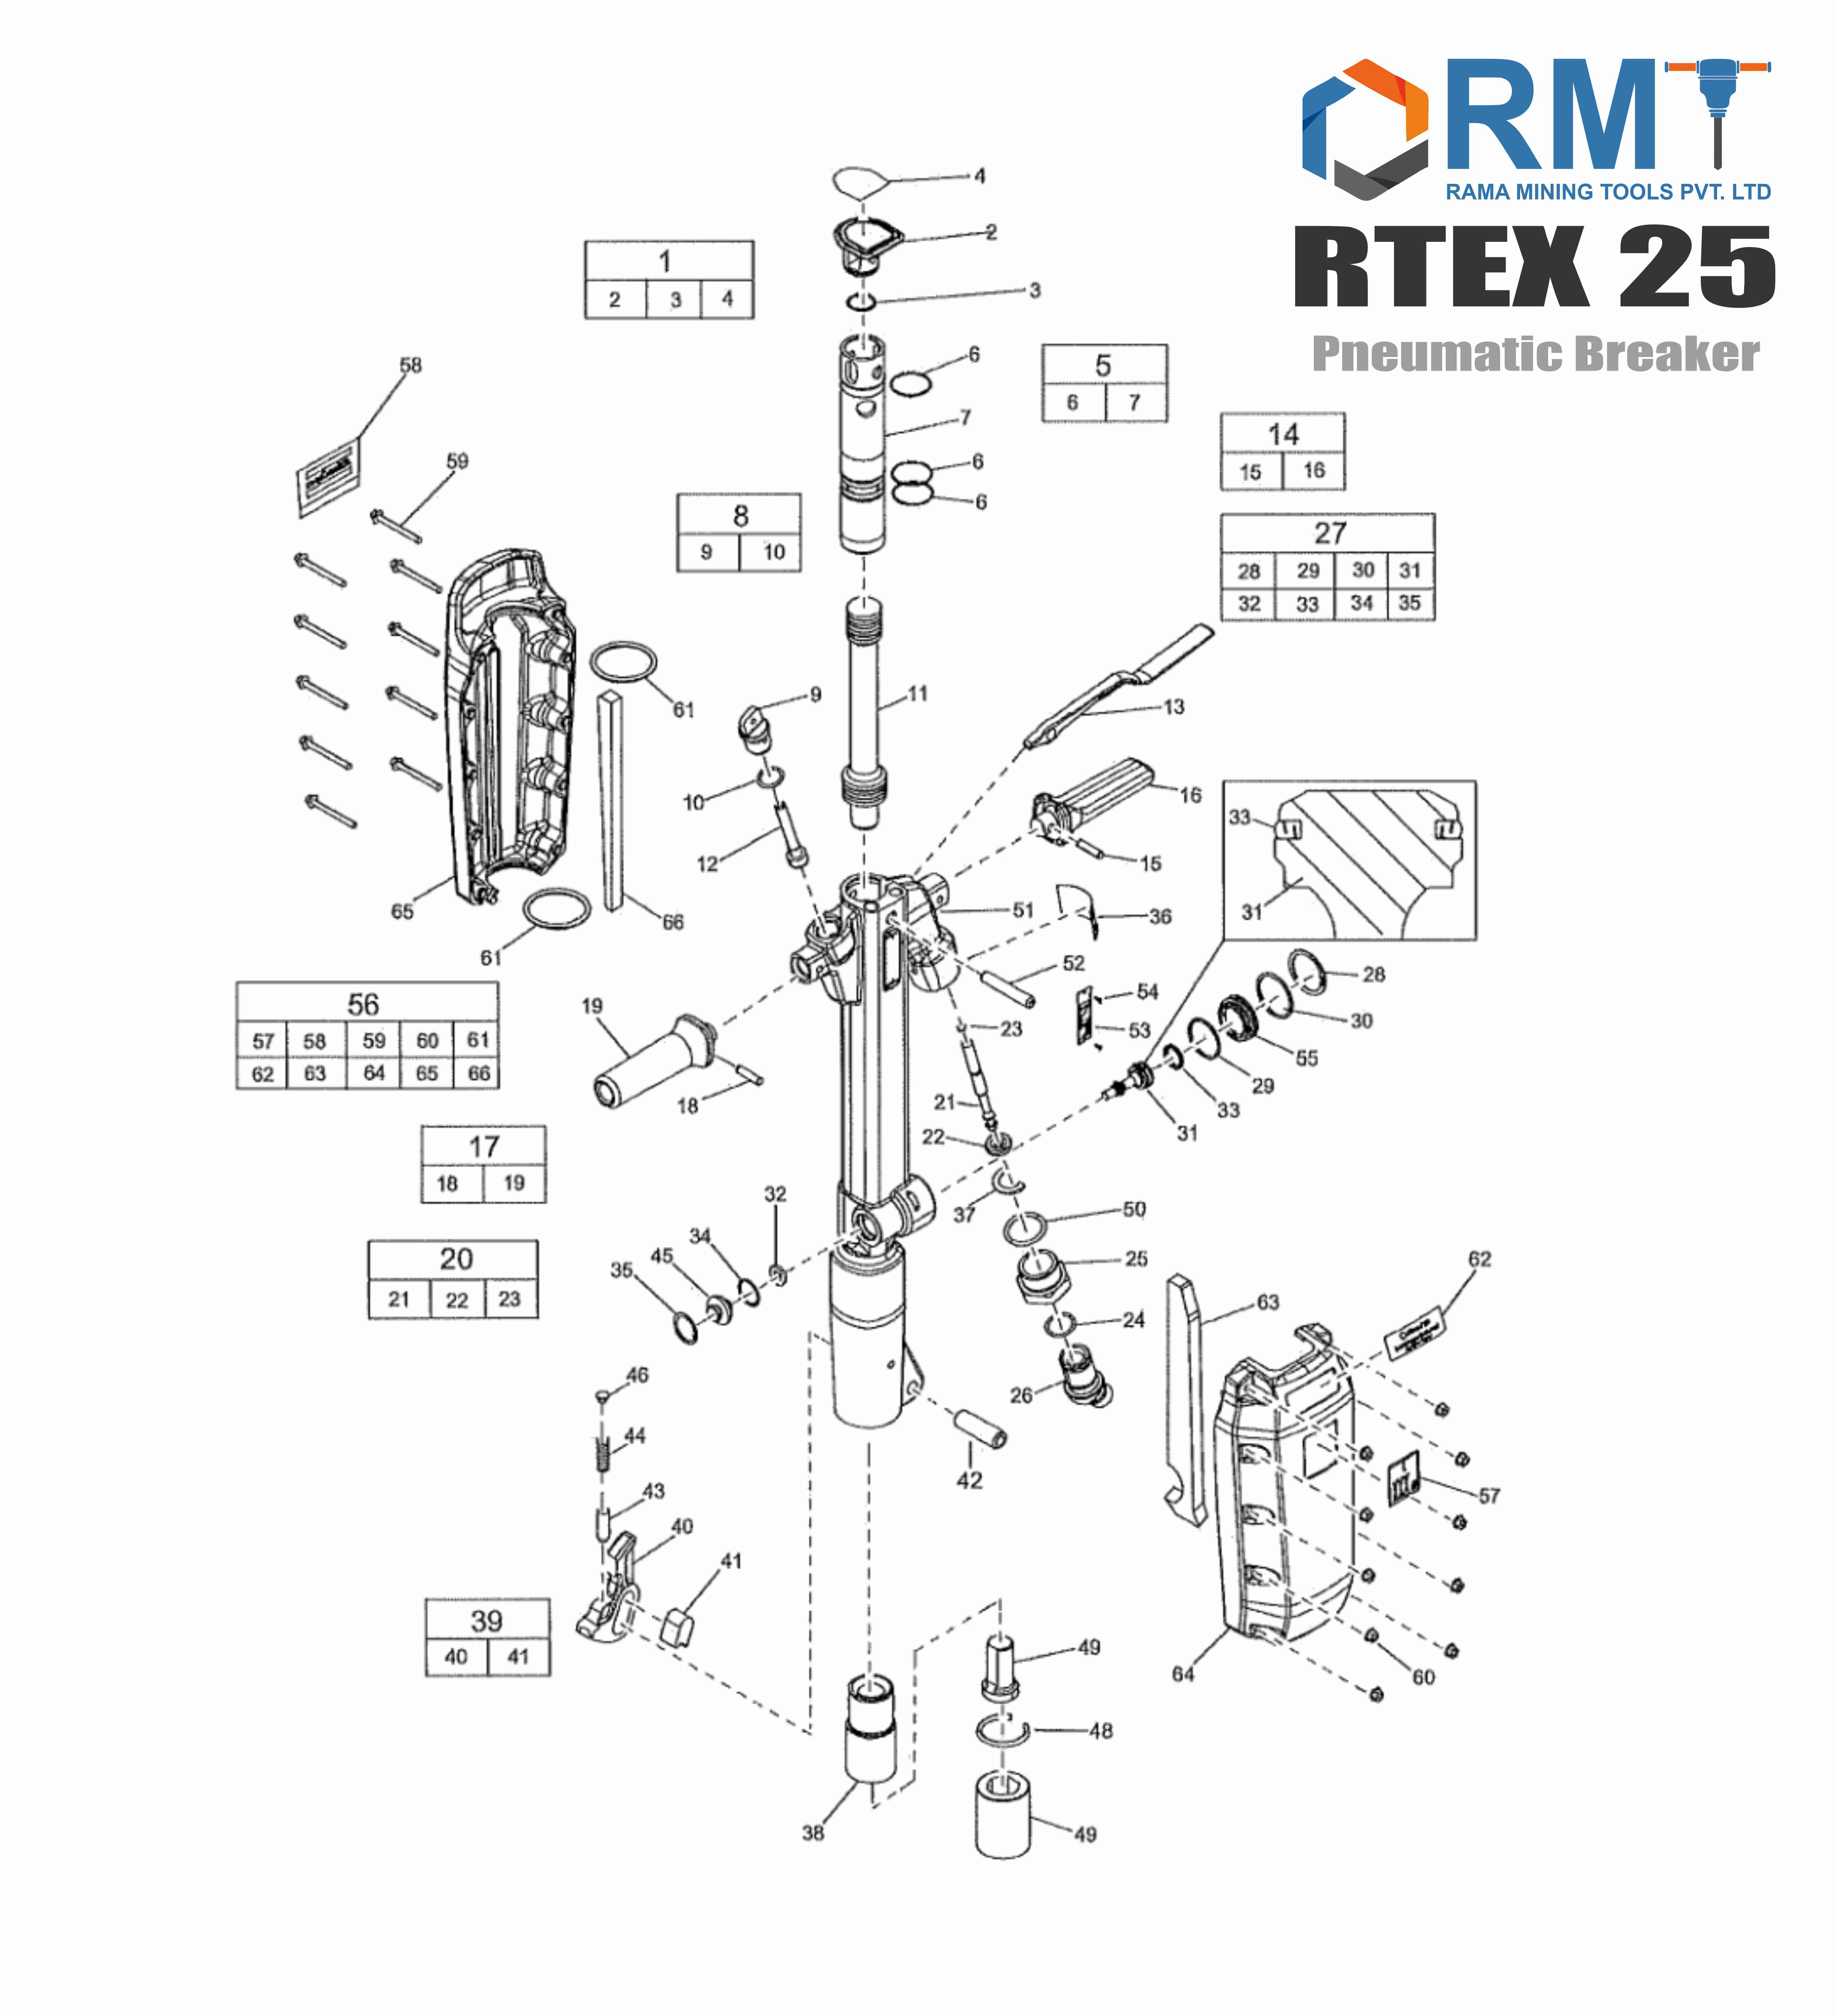 RTEX 25 - Pneumatic Breaker